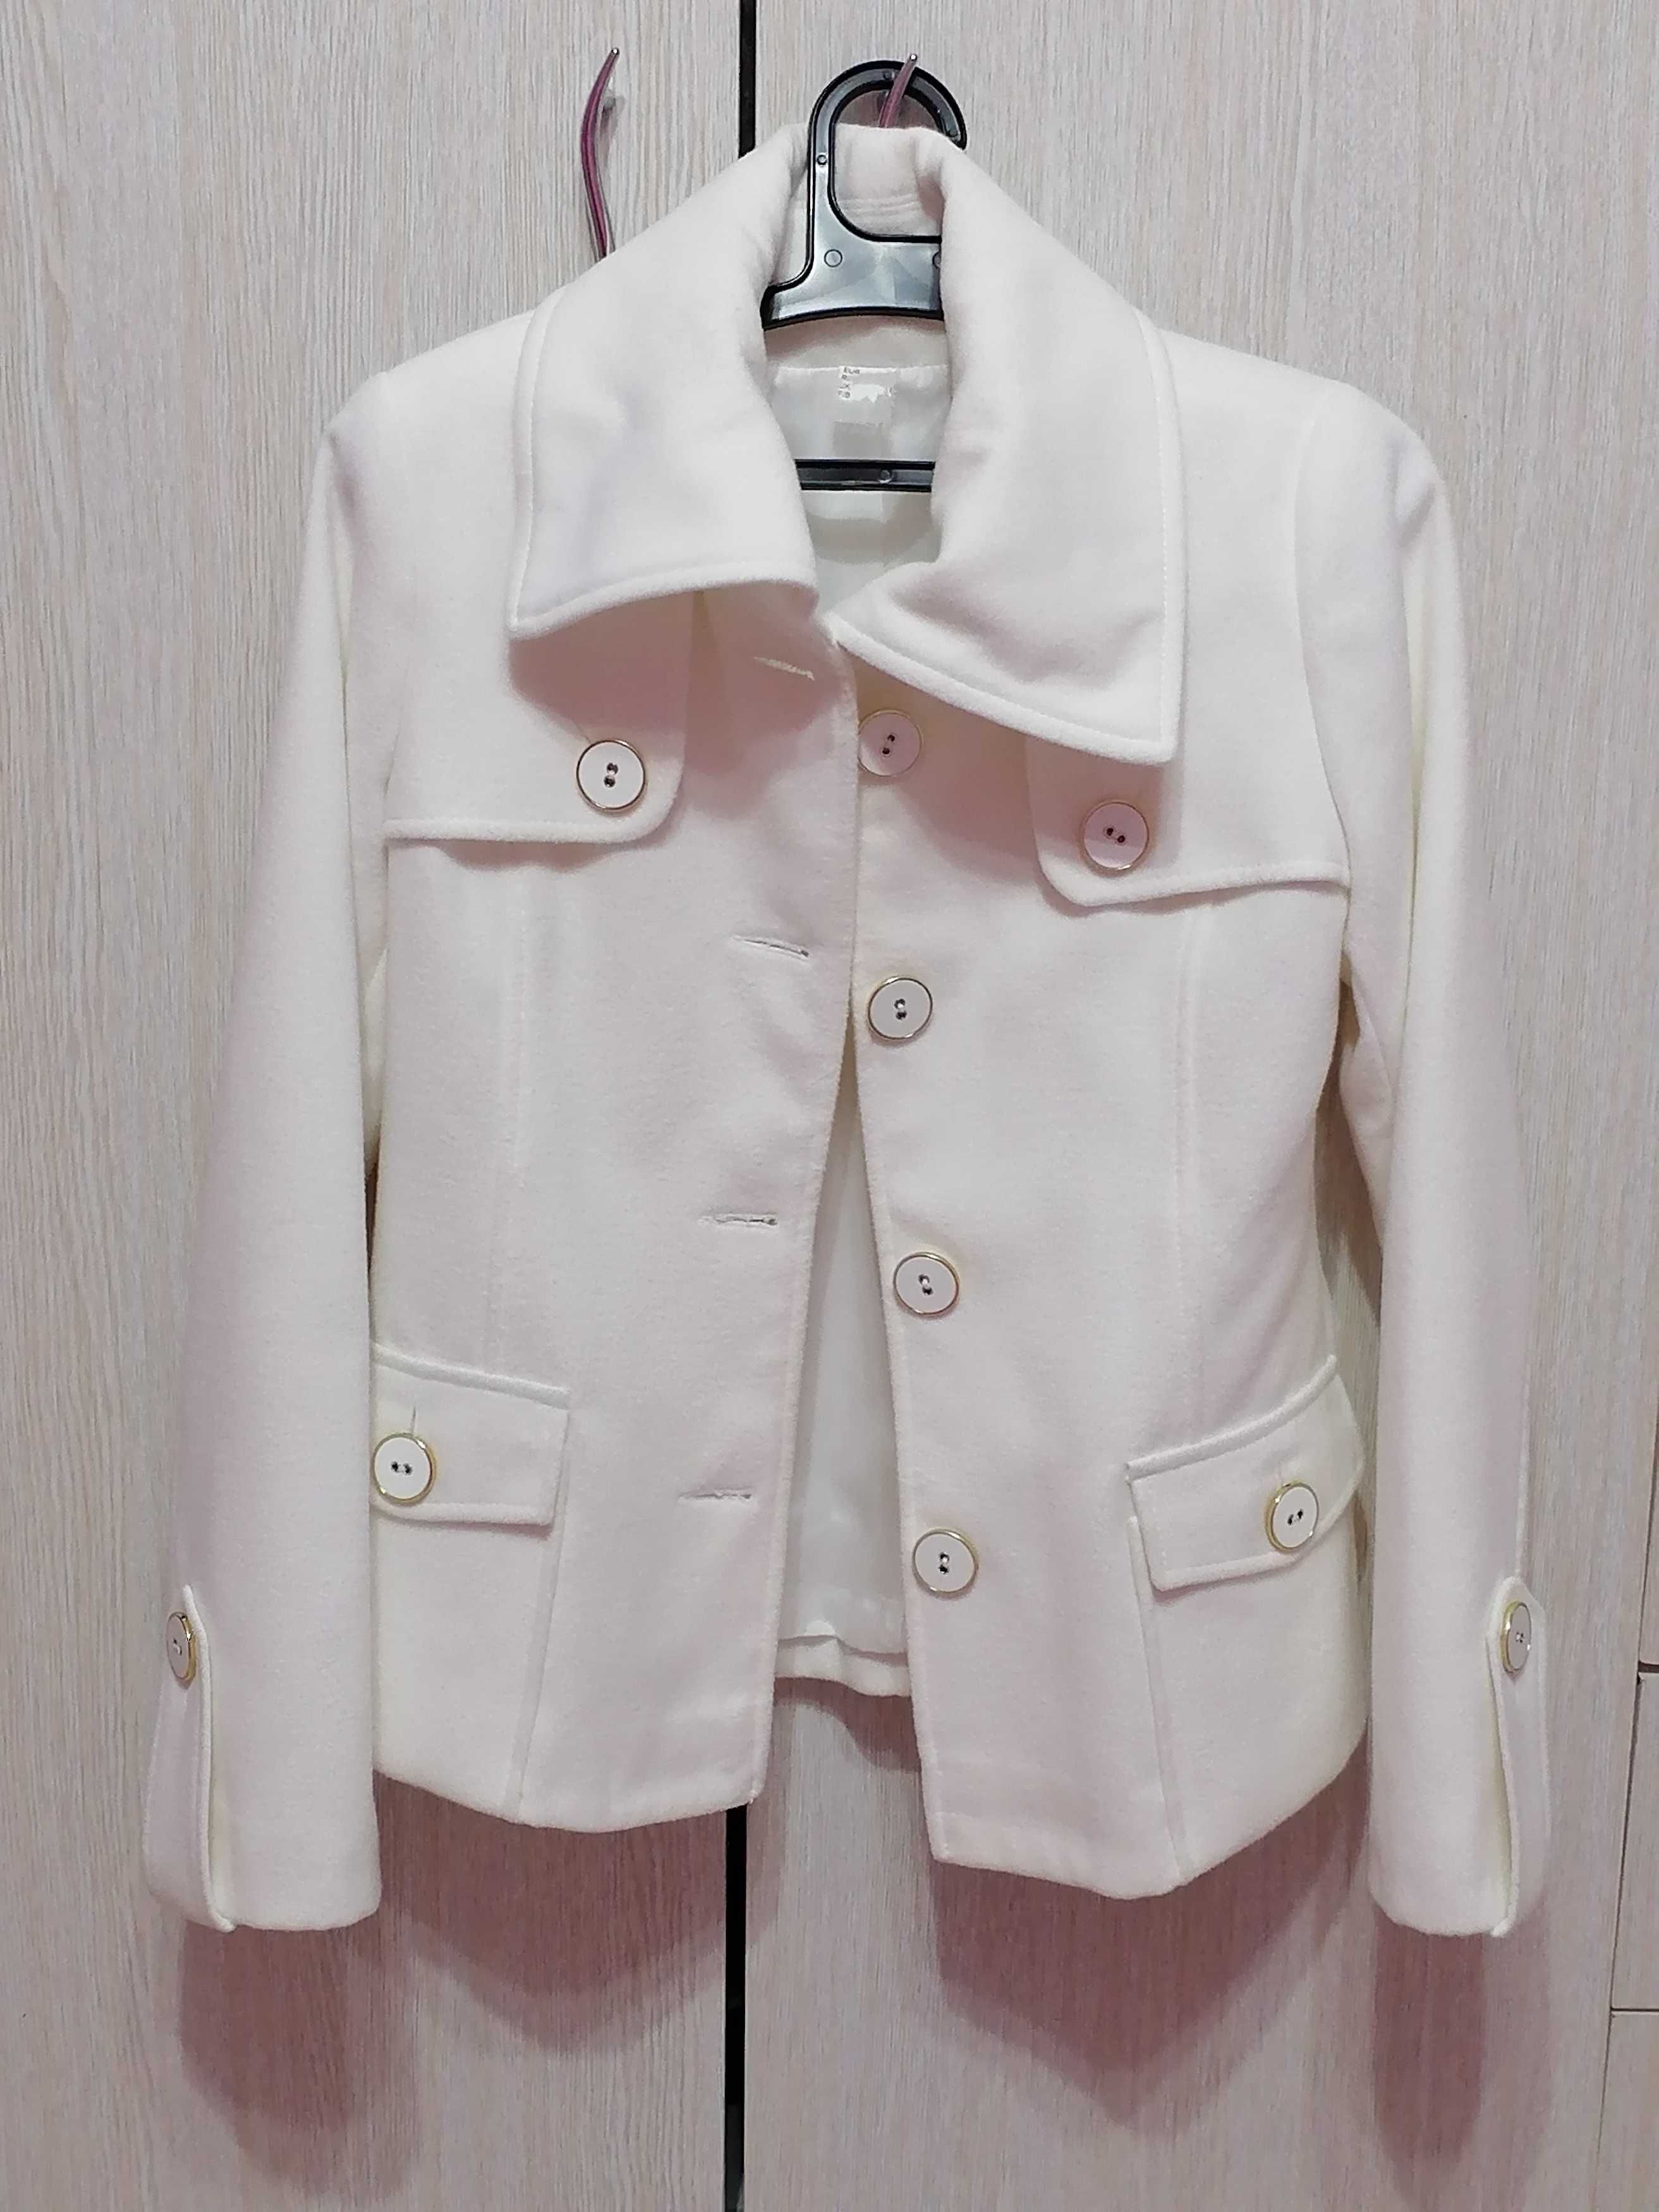 Palton alb, elegant, mărime S.